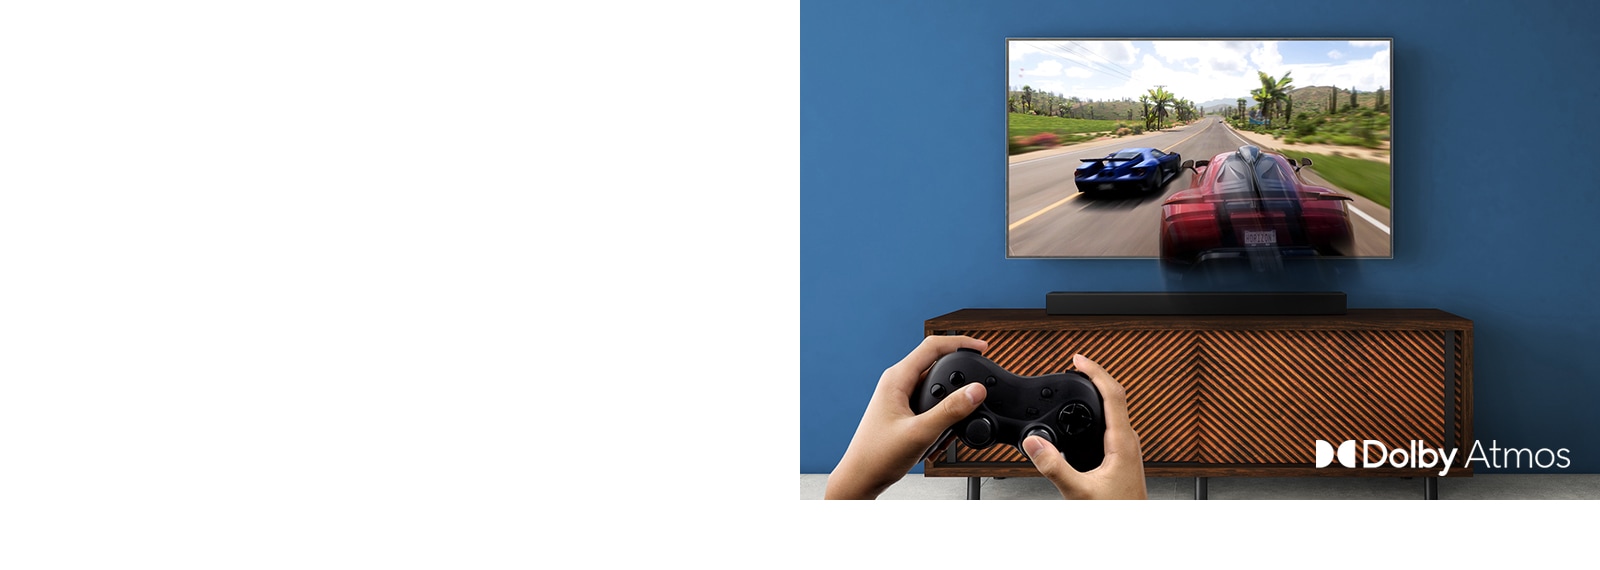 Μια τηλεόραση LG τοποθετημένη στον τοίχο, δείχνοντας ένα παιχνίδι αγώνων ταχύτητας. Το LG Sound Bar είναι τοποθετημένο πάνω στο καφέ ράφι, ακριβώς κάτω από την τηλεόραση LG. Ένας άντρας κρατά ένα joystick.